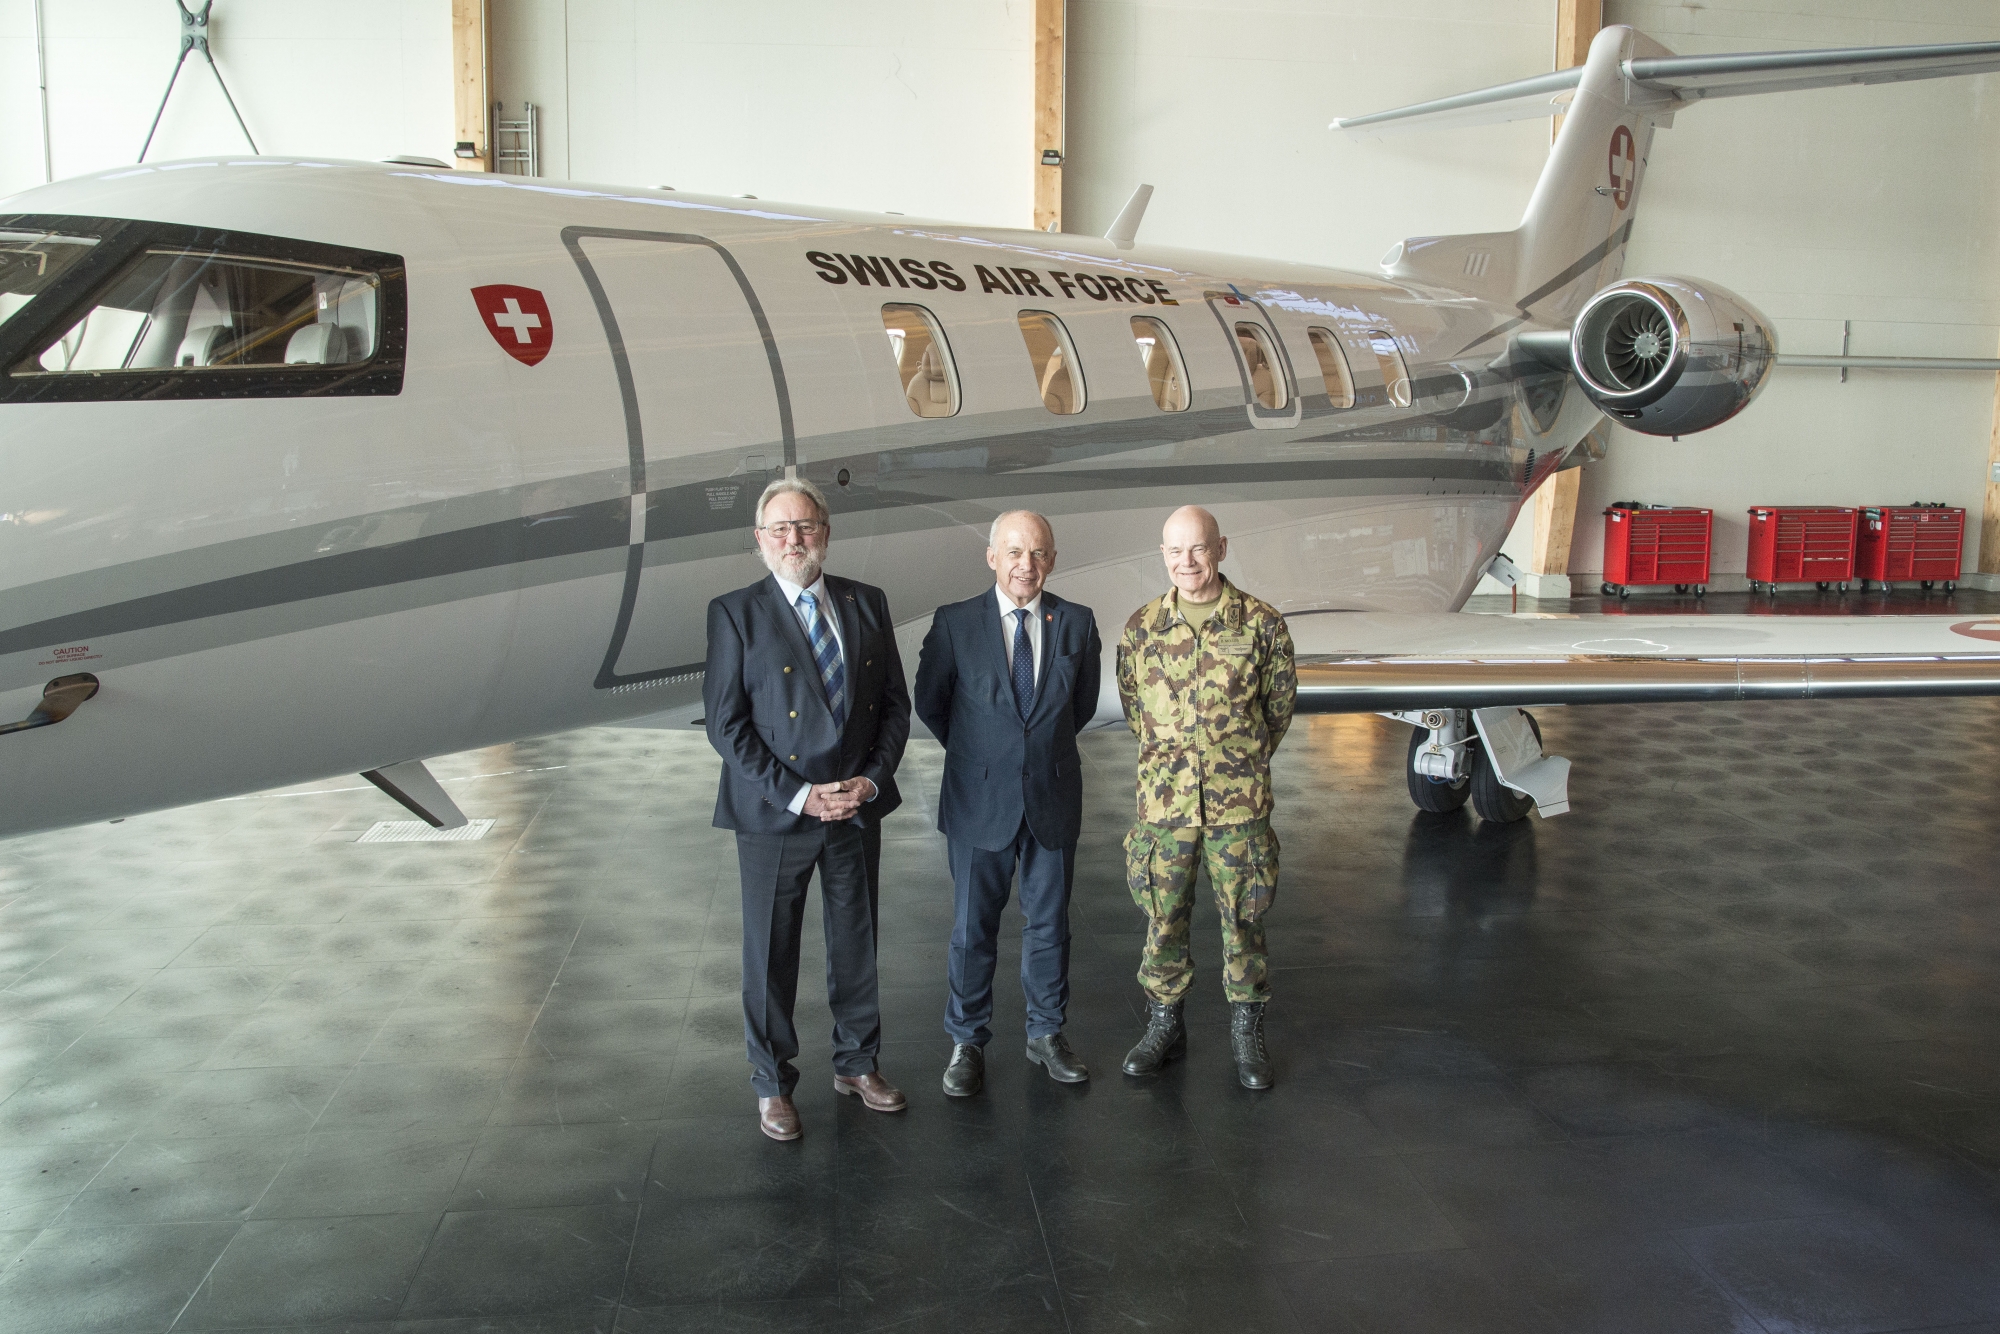 Ueli Maurer, entouré par Oskar J. Schwenk, président du conseil d’administration de Pilatus, et le divisionnaire Bernhard Müller, commandant des Forces aériennes suisses.